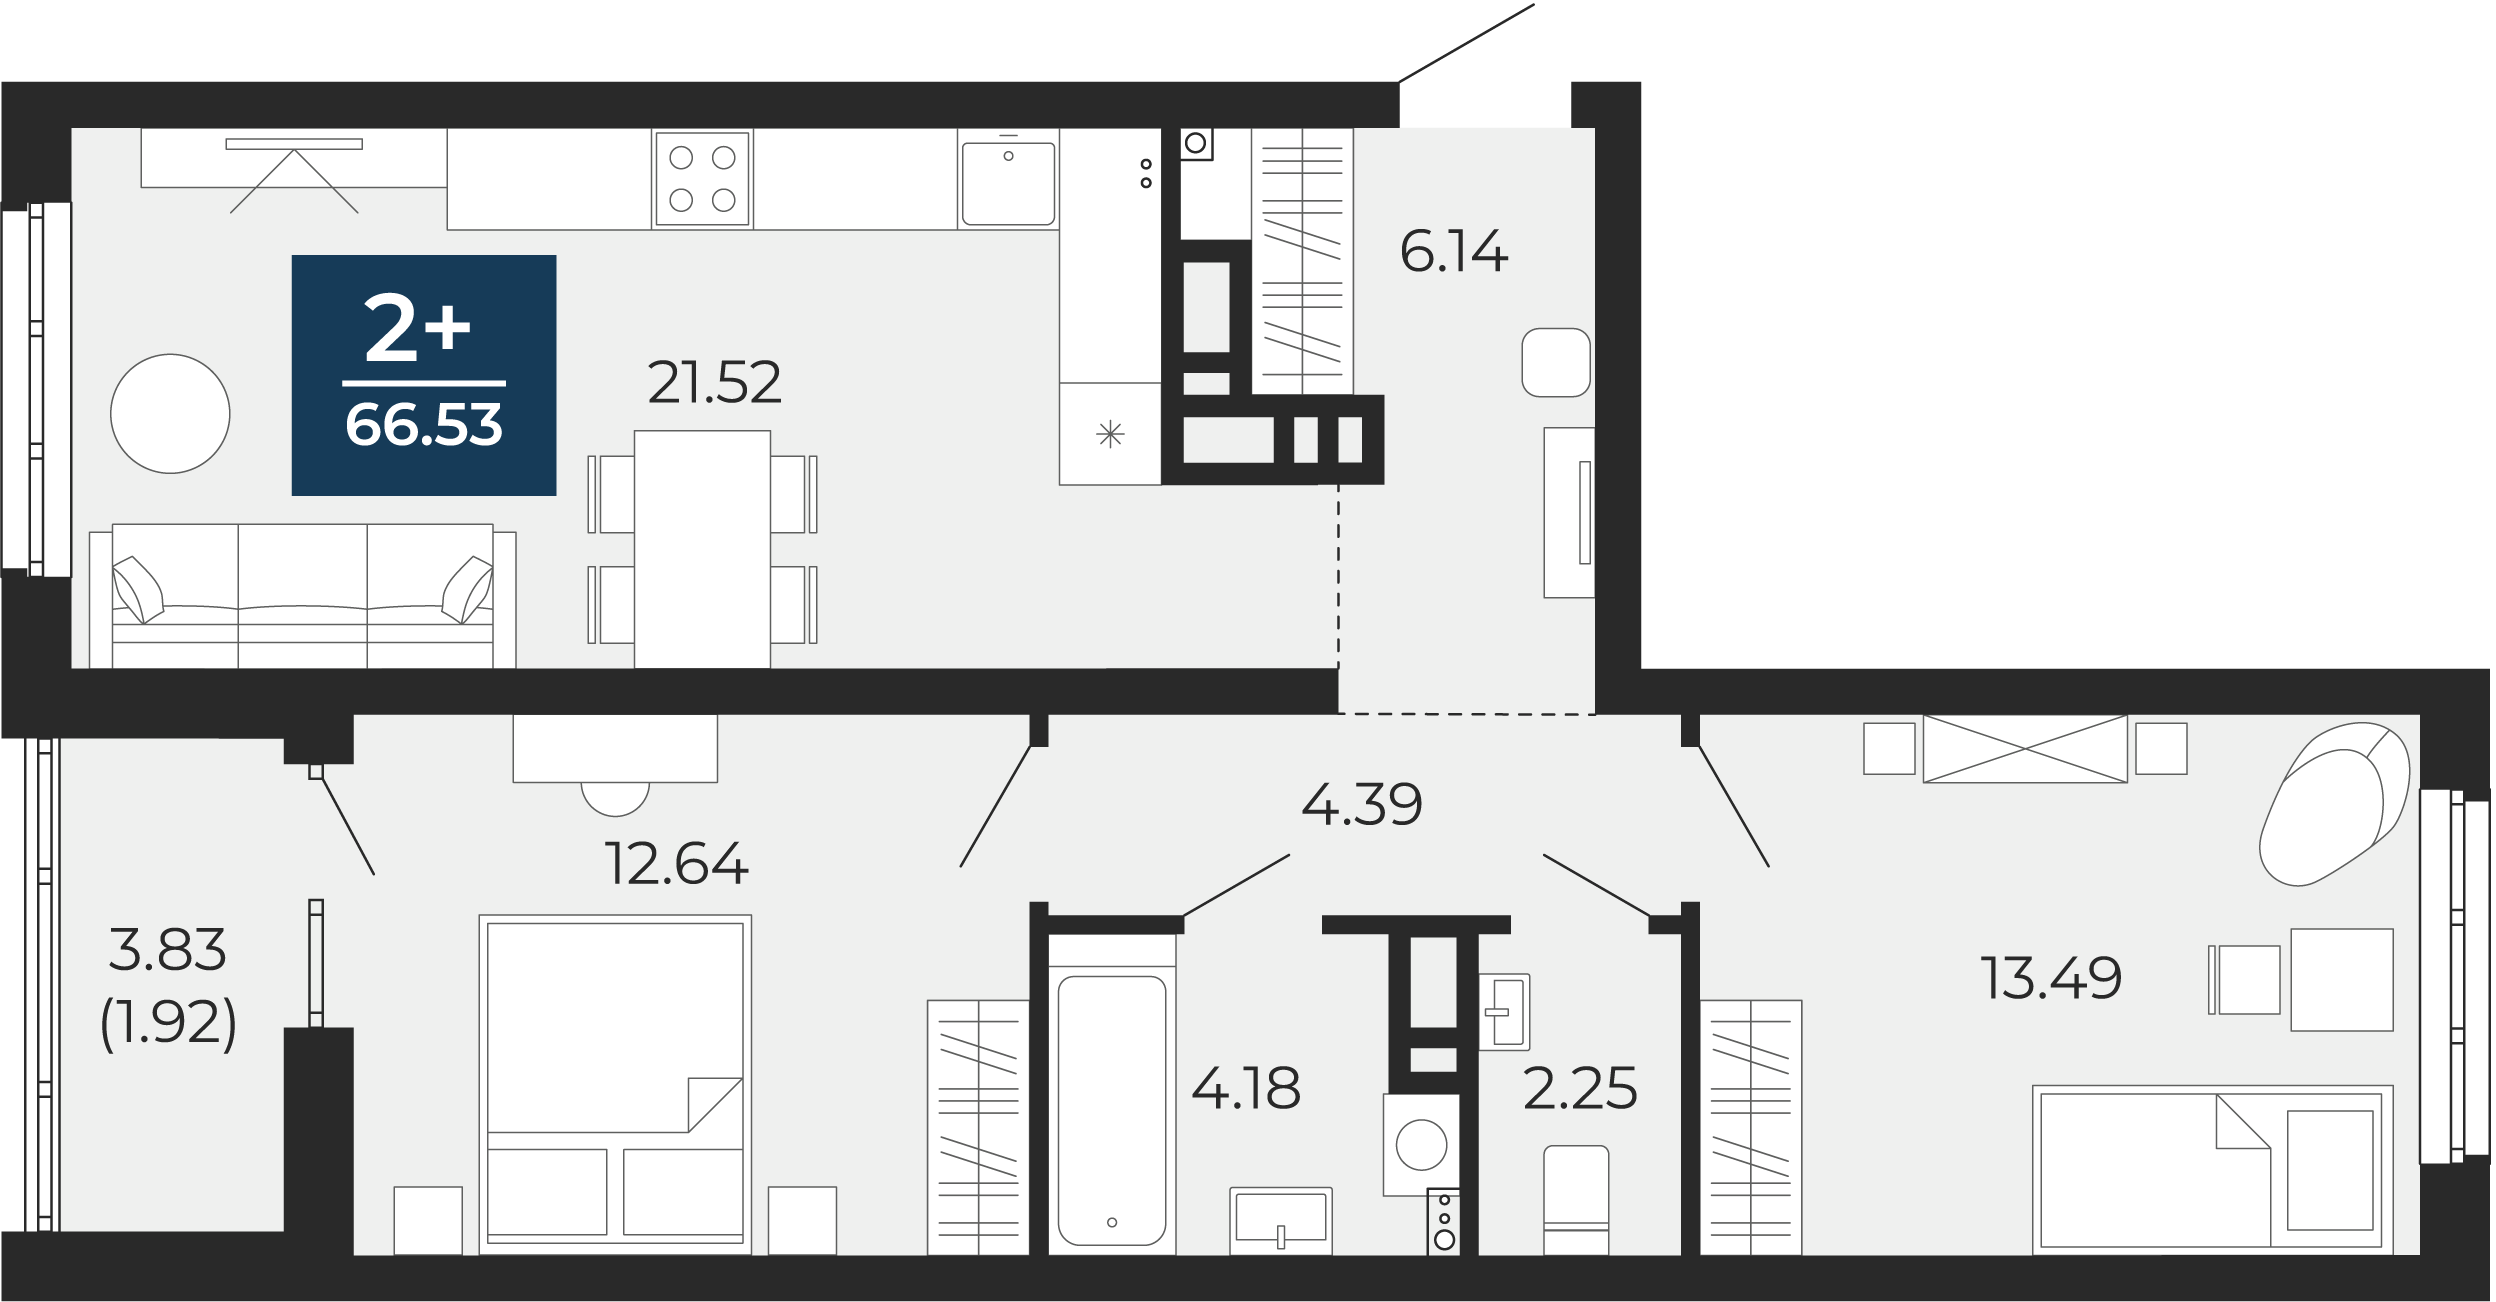 Квартира № 183, 2-комнатная, 66.53 кв. м, 12 этаж